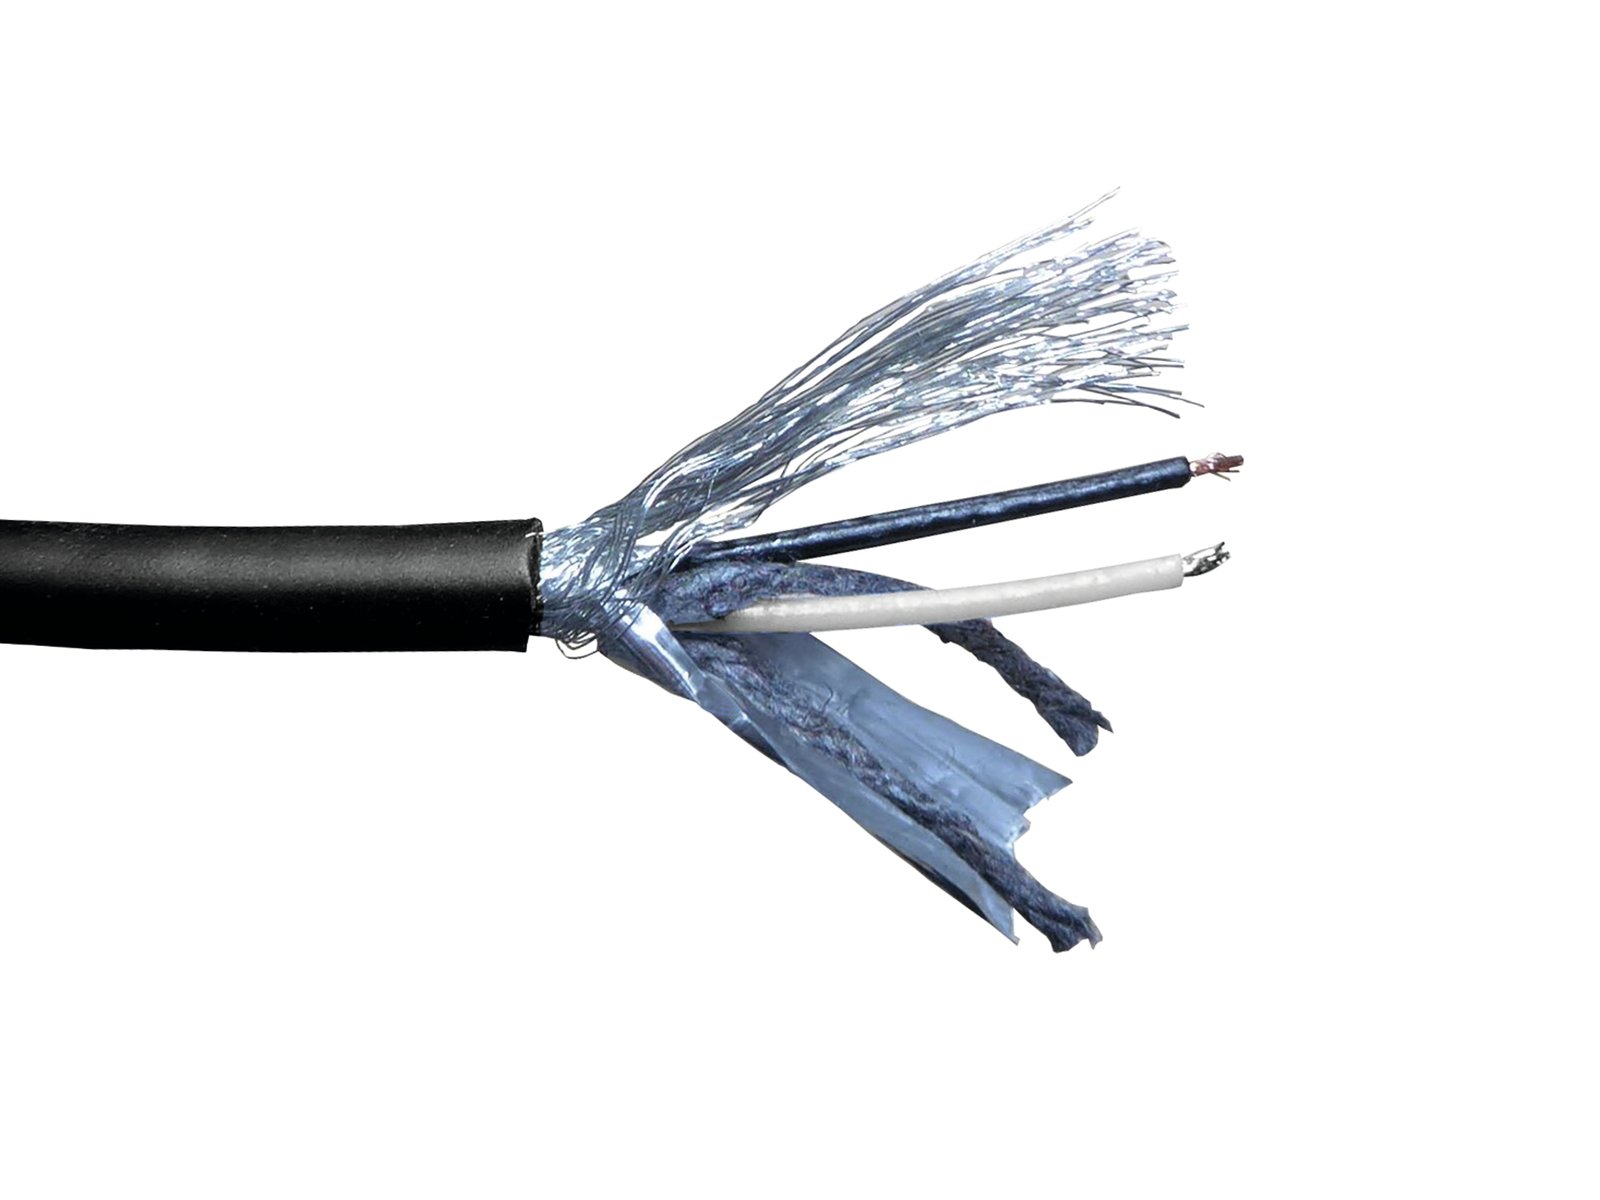 EUROLITE DMX cable 2×0.22 100m bk